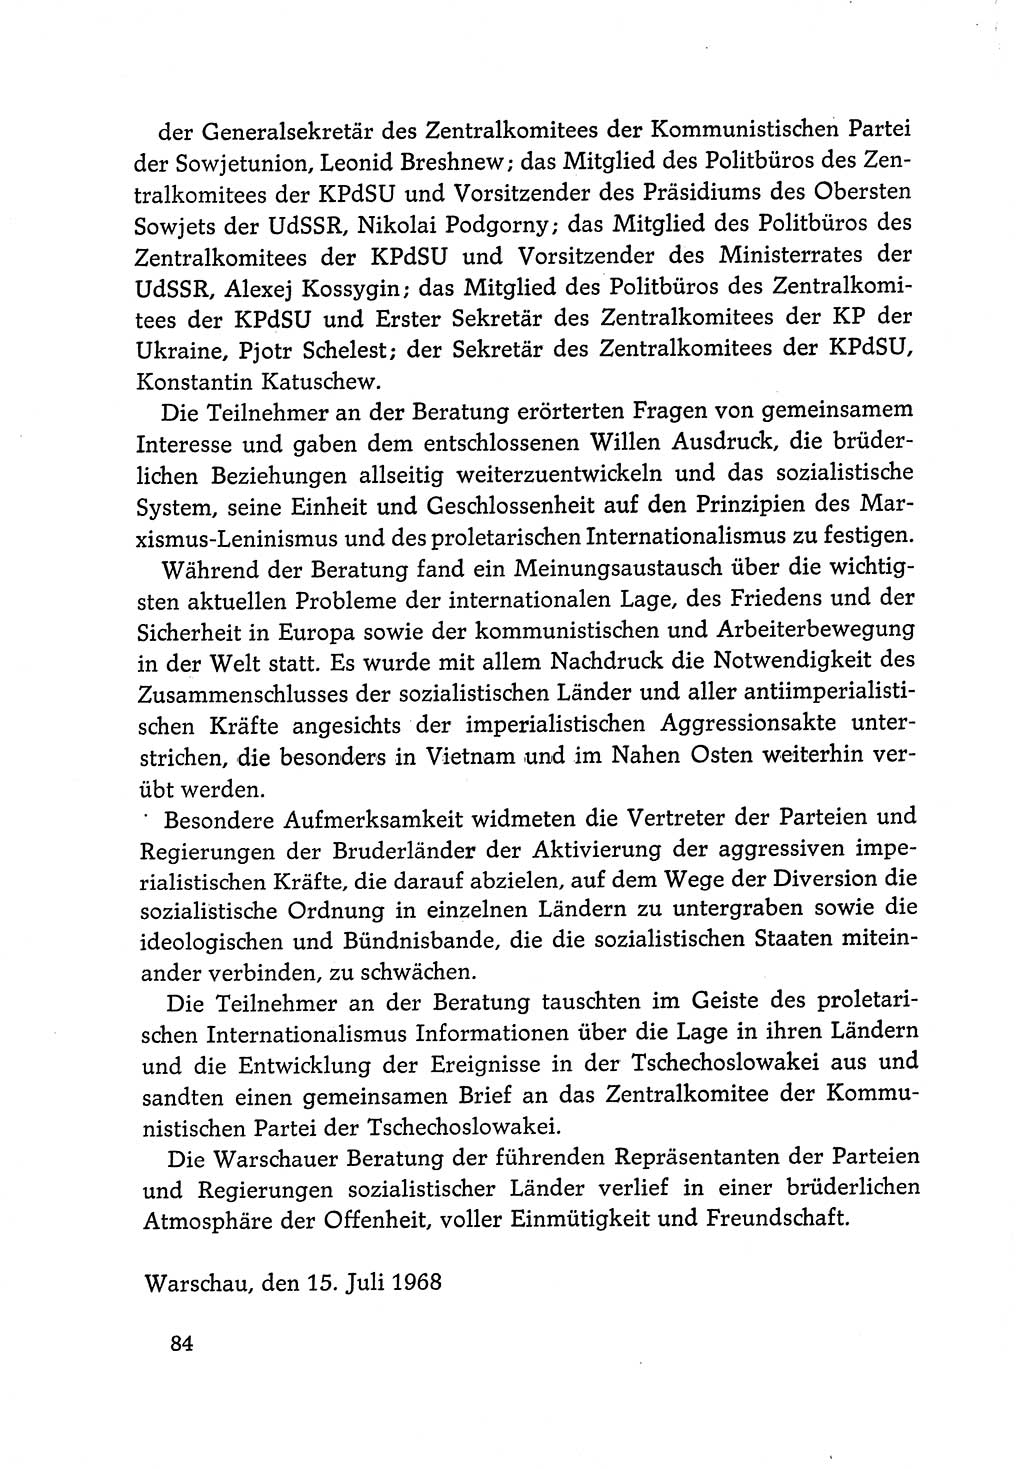 Dokumente der Sozialistischen Einheitspartei Deutschlands (SED) [Deutsche Demokratische Republik (DDR)] 1968-1969, Seite 84 (Dok. SED DDR 1968-1969, S. 84)